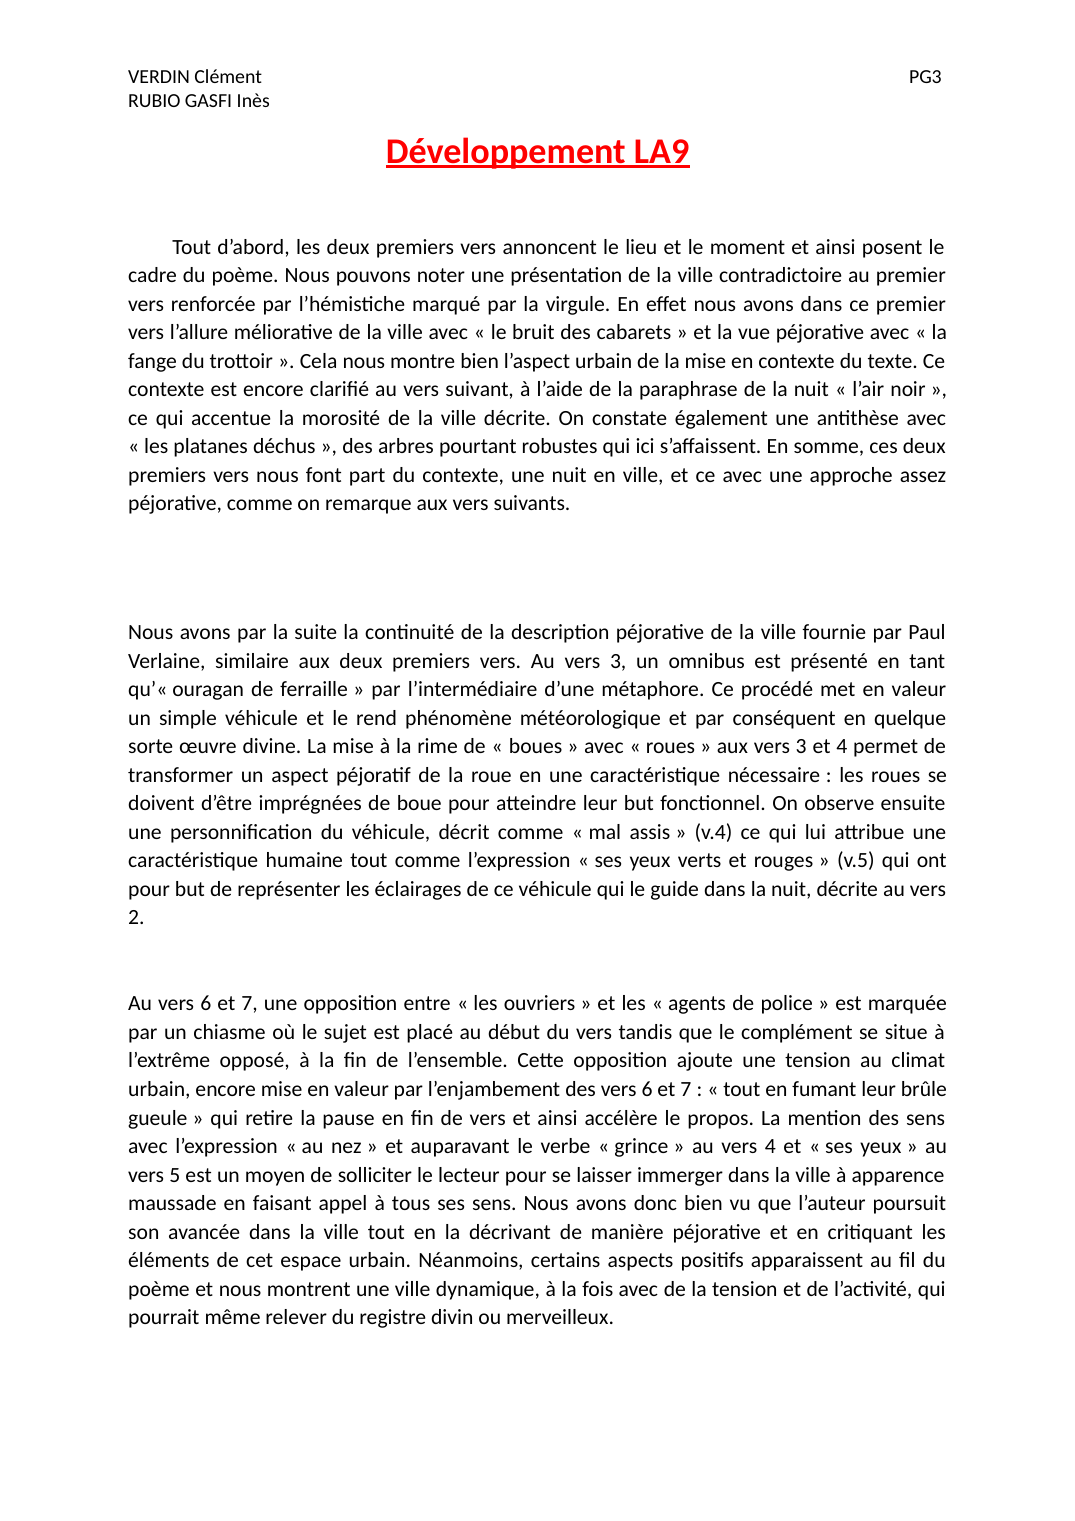 Prévisualisation du document Analyse Le Bruit des Cabarets, la fange du trottoir de Verlaine